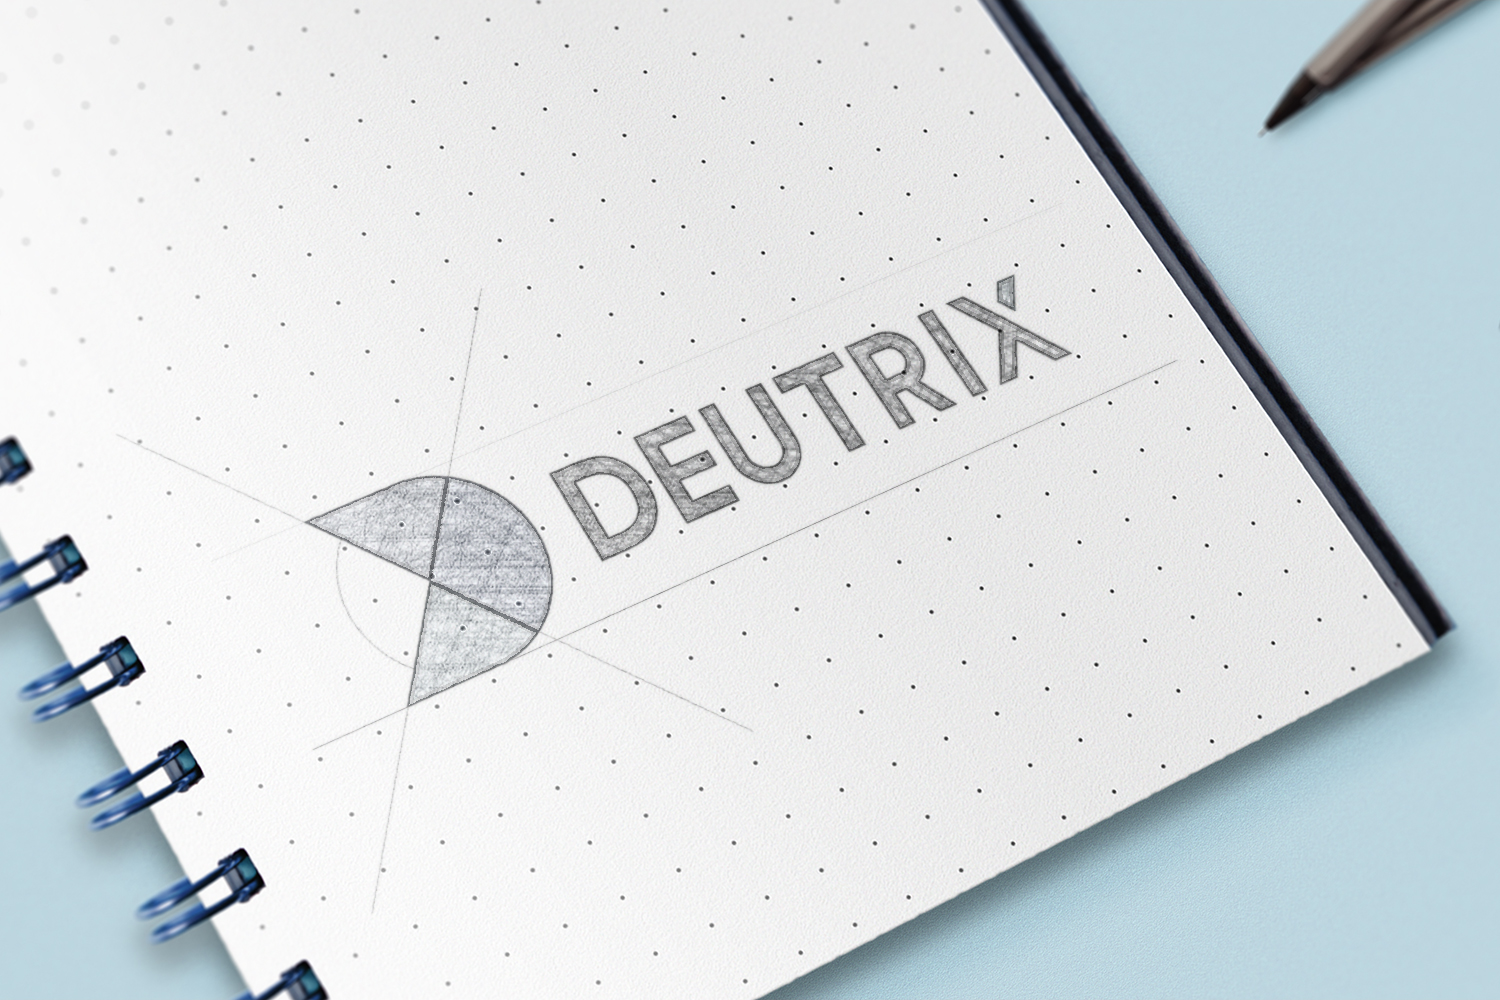 Embracing a New Era: Deutrix’s Brand Revolution